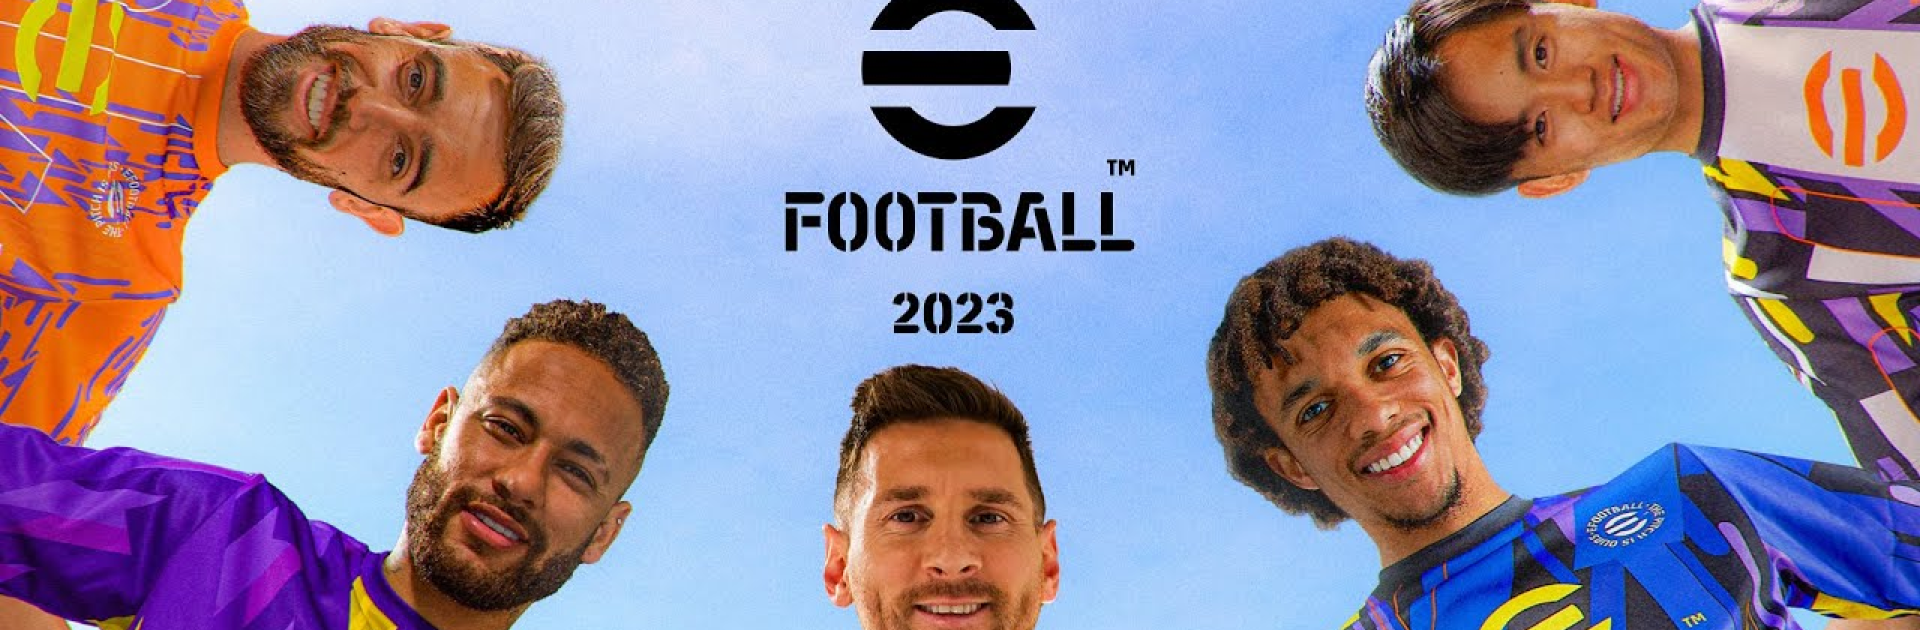 Voucher e-Football 2023 